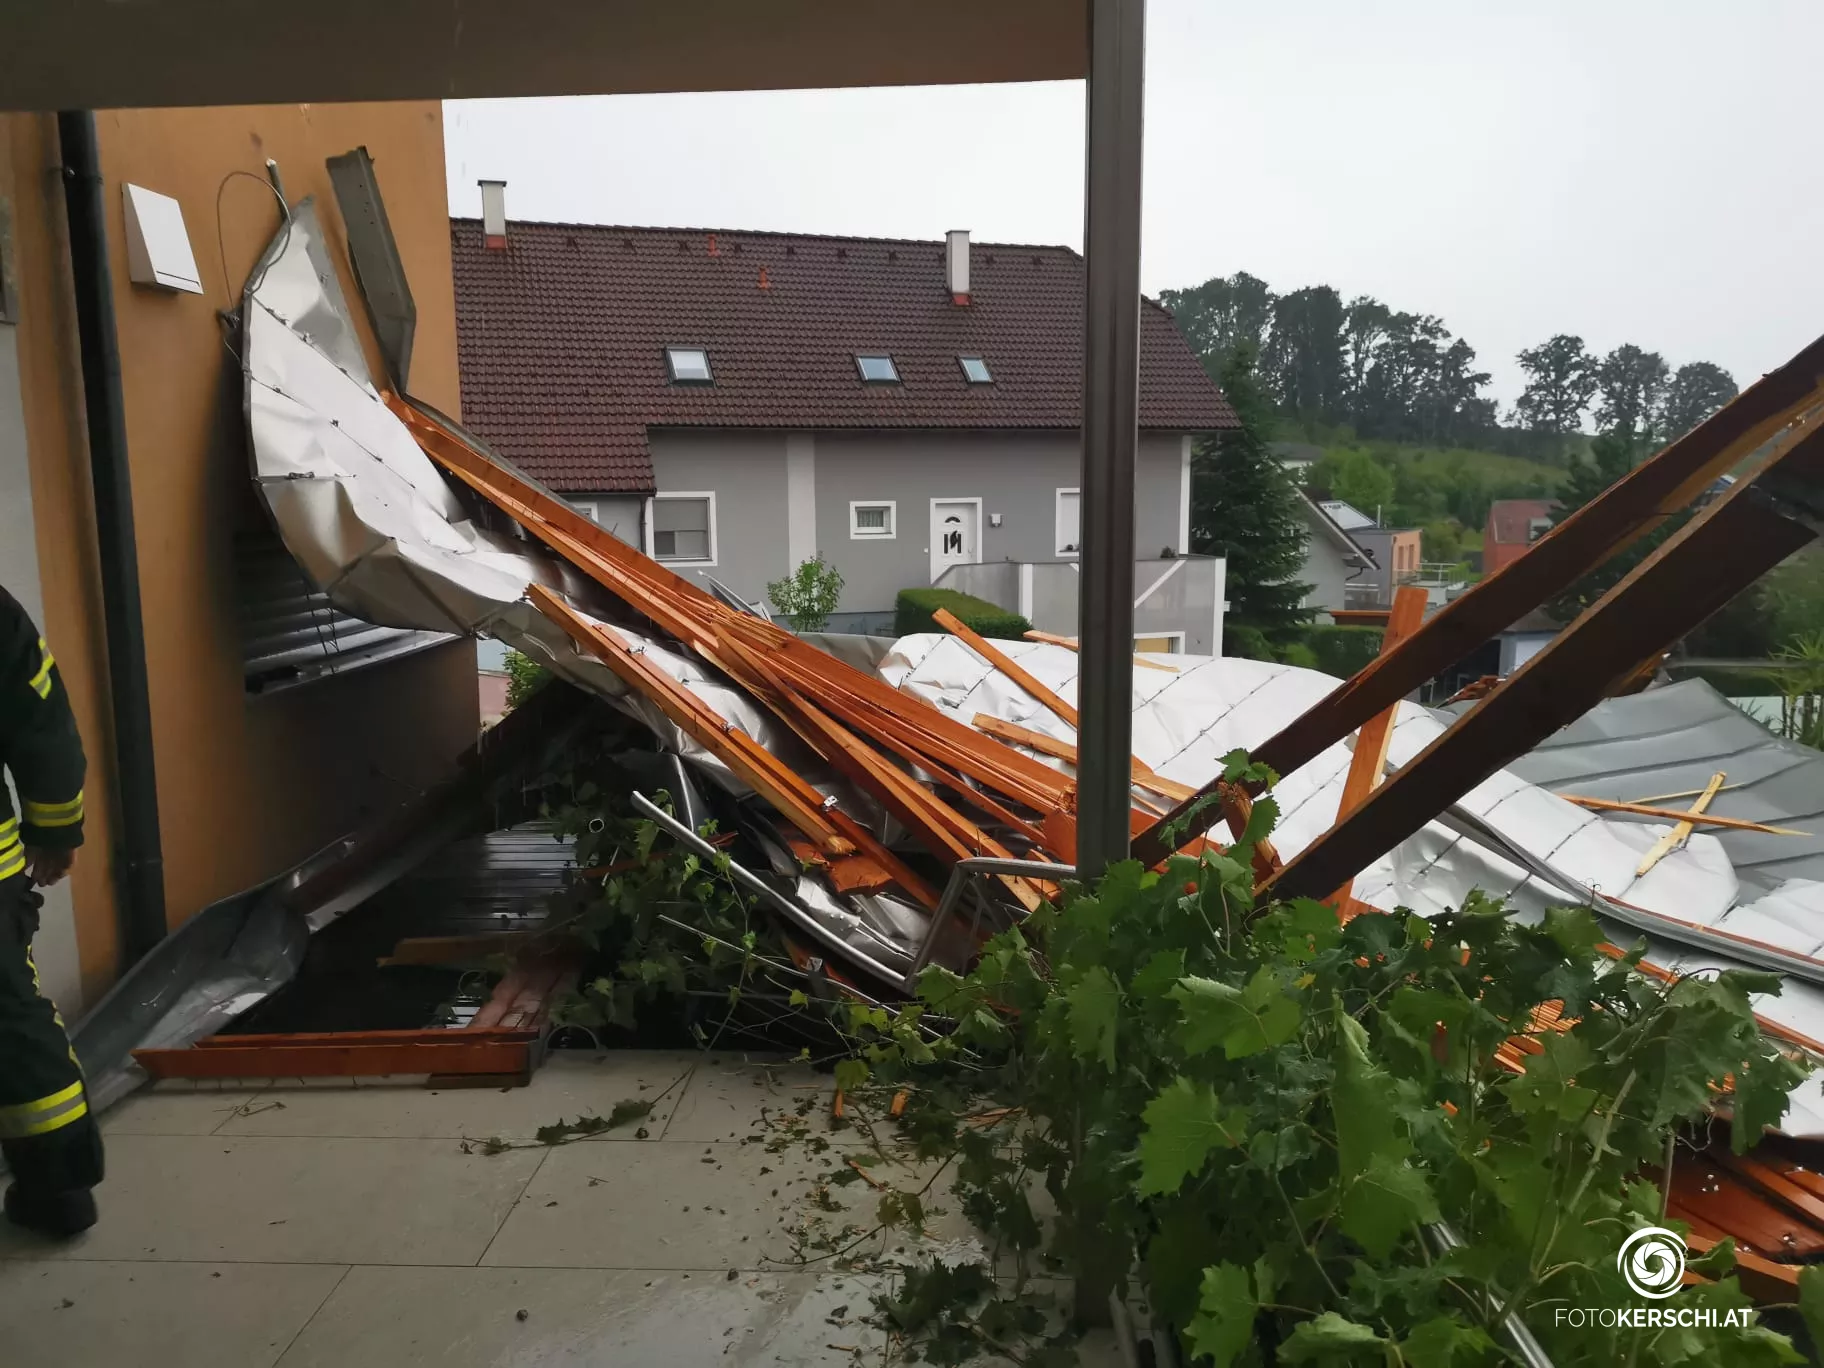 Heftiger Sturm hinterlässt Spur der Verwüstung: Dach eines Einfamilienhauses abgedeckt